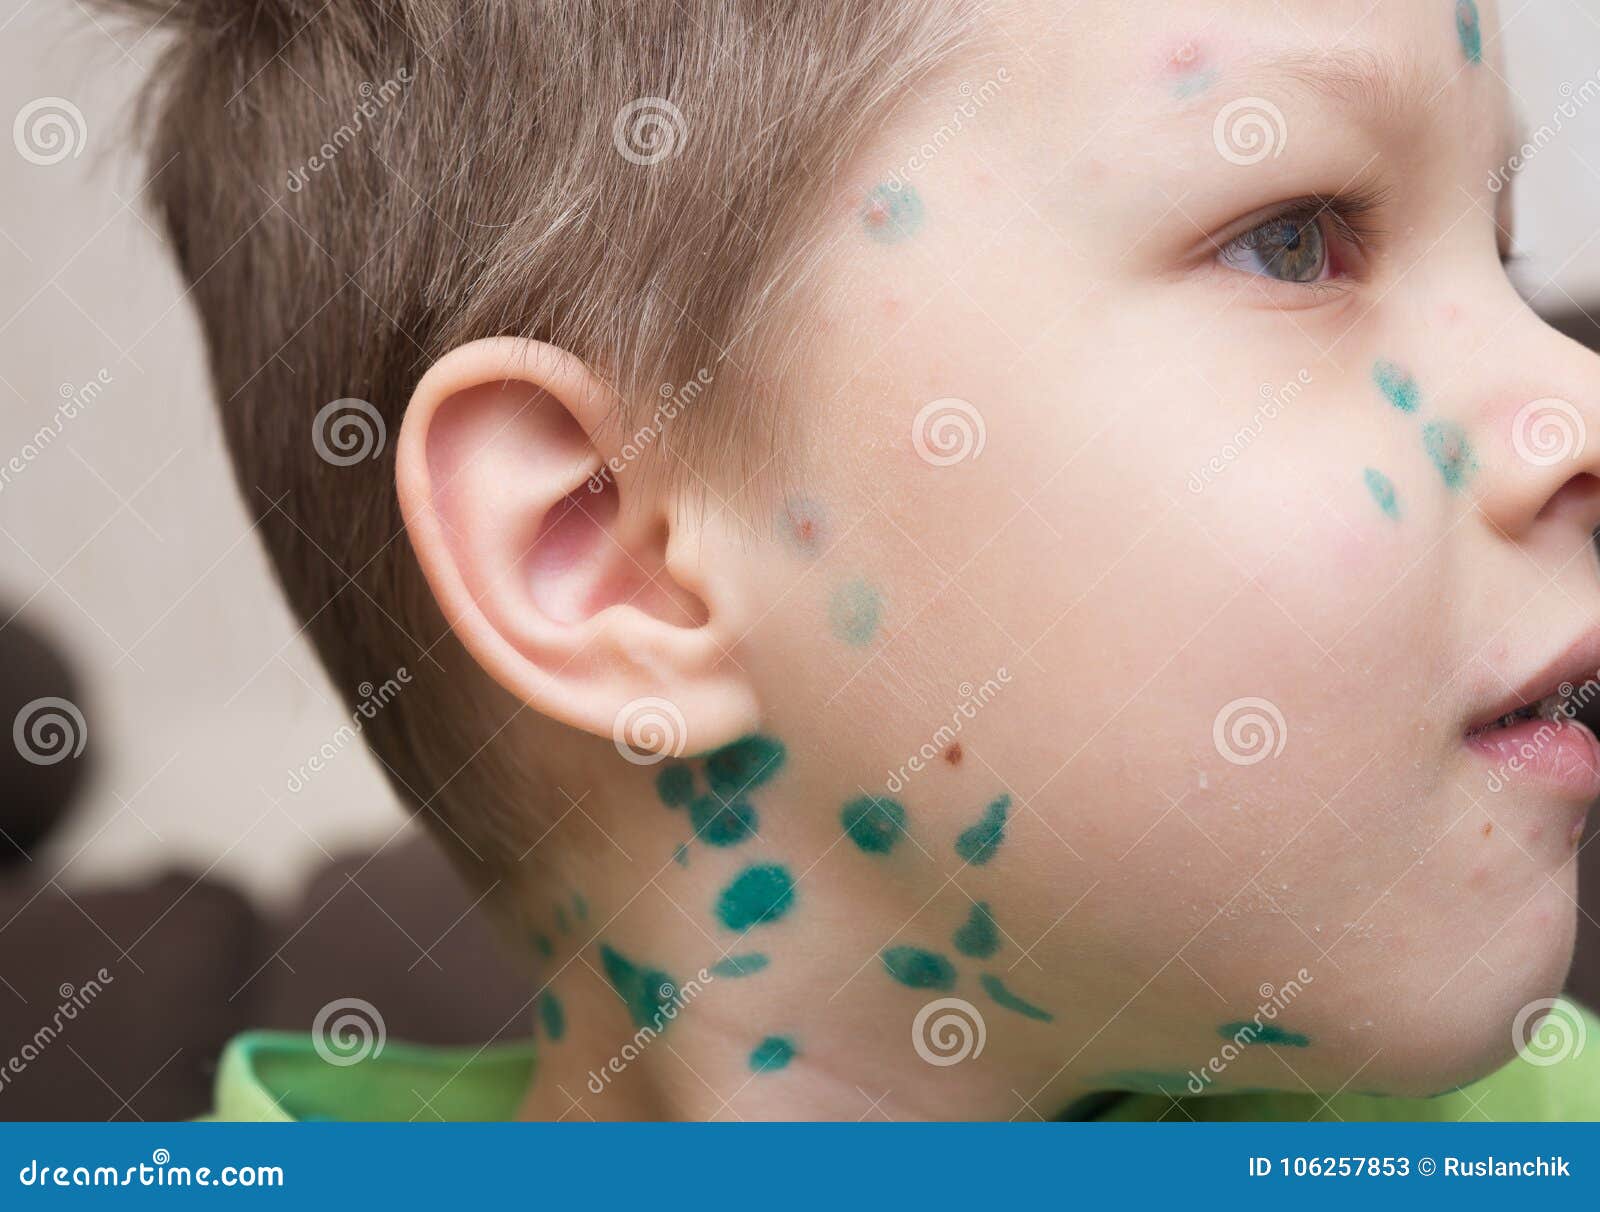 boy with chicken pox